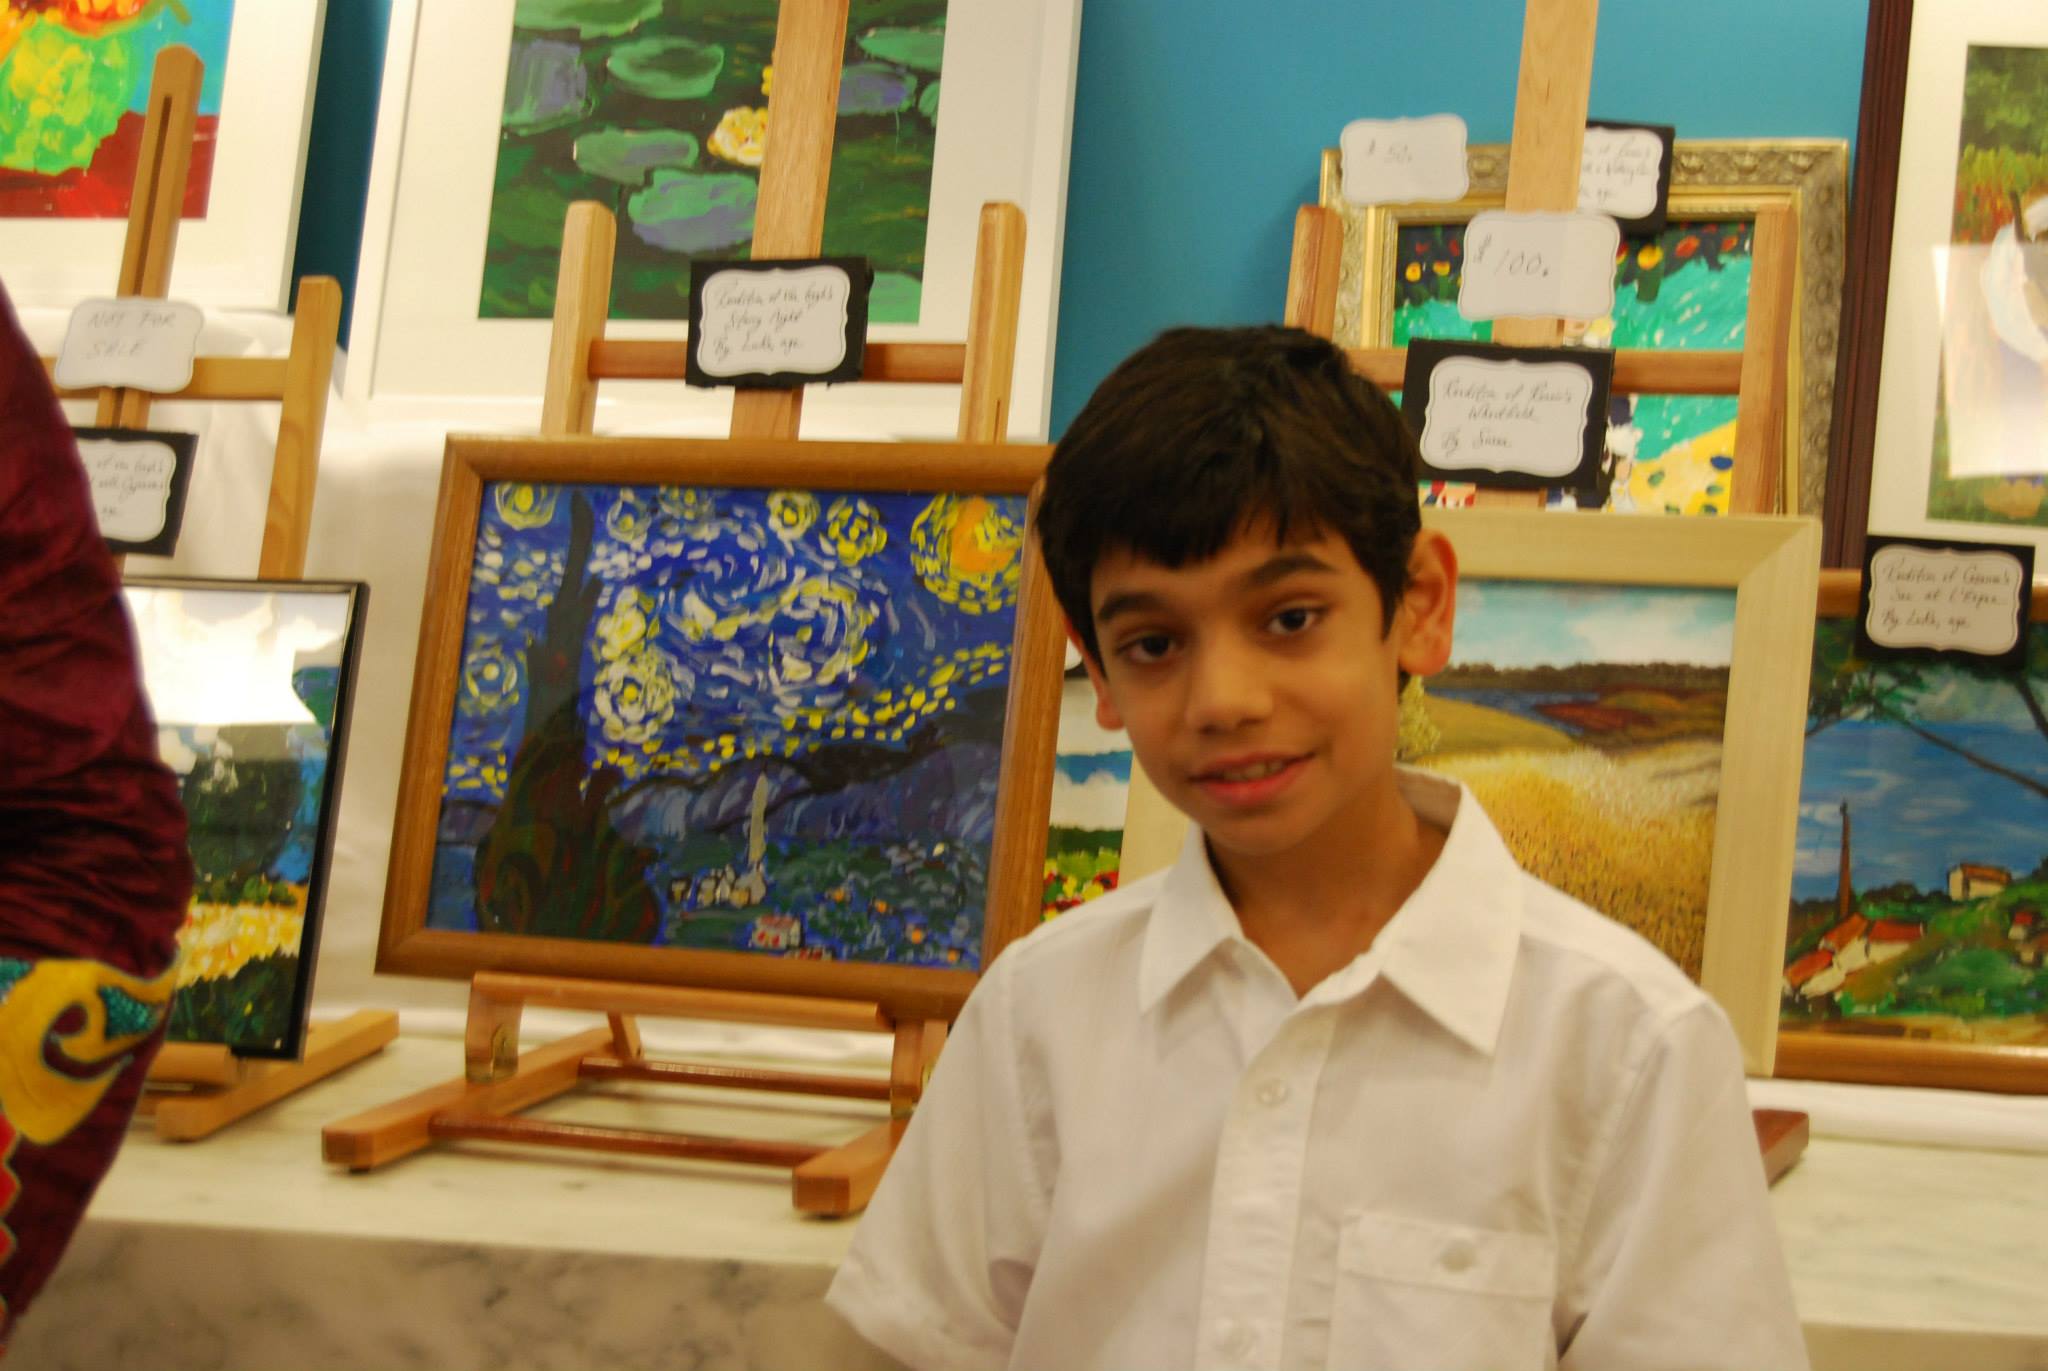 Luka displays his rendition of Vincent van Gogh’s Starry Night to support A.I.M. and U.N.I.C.E.F.